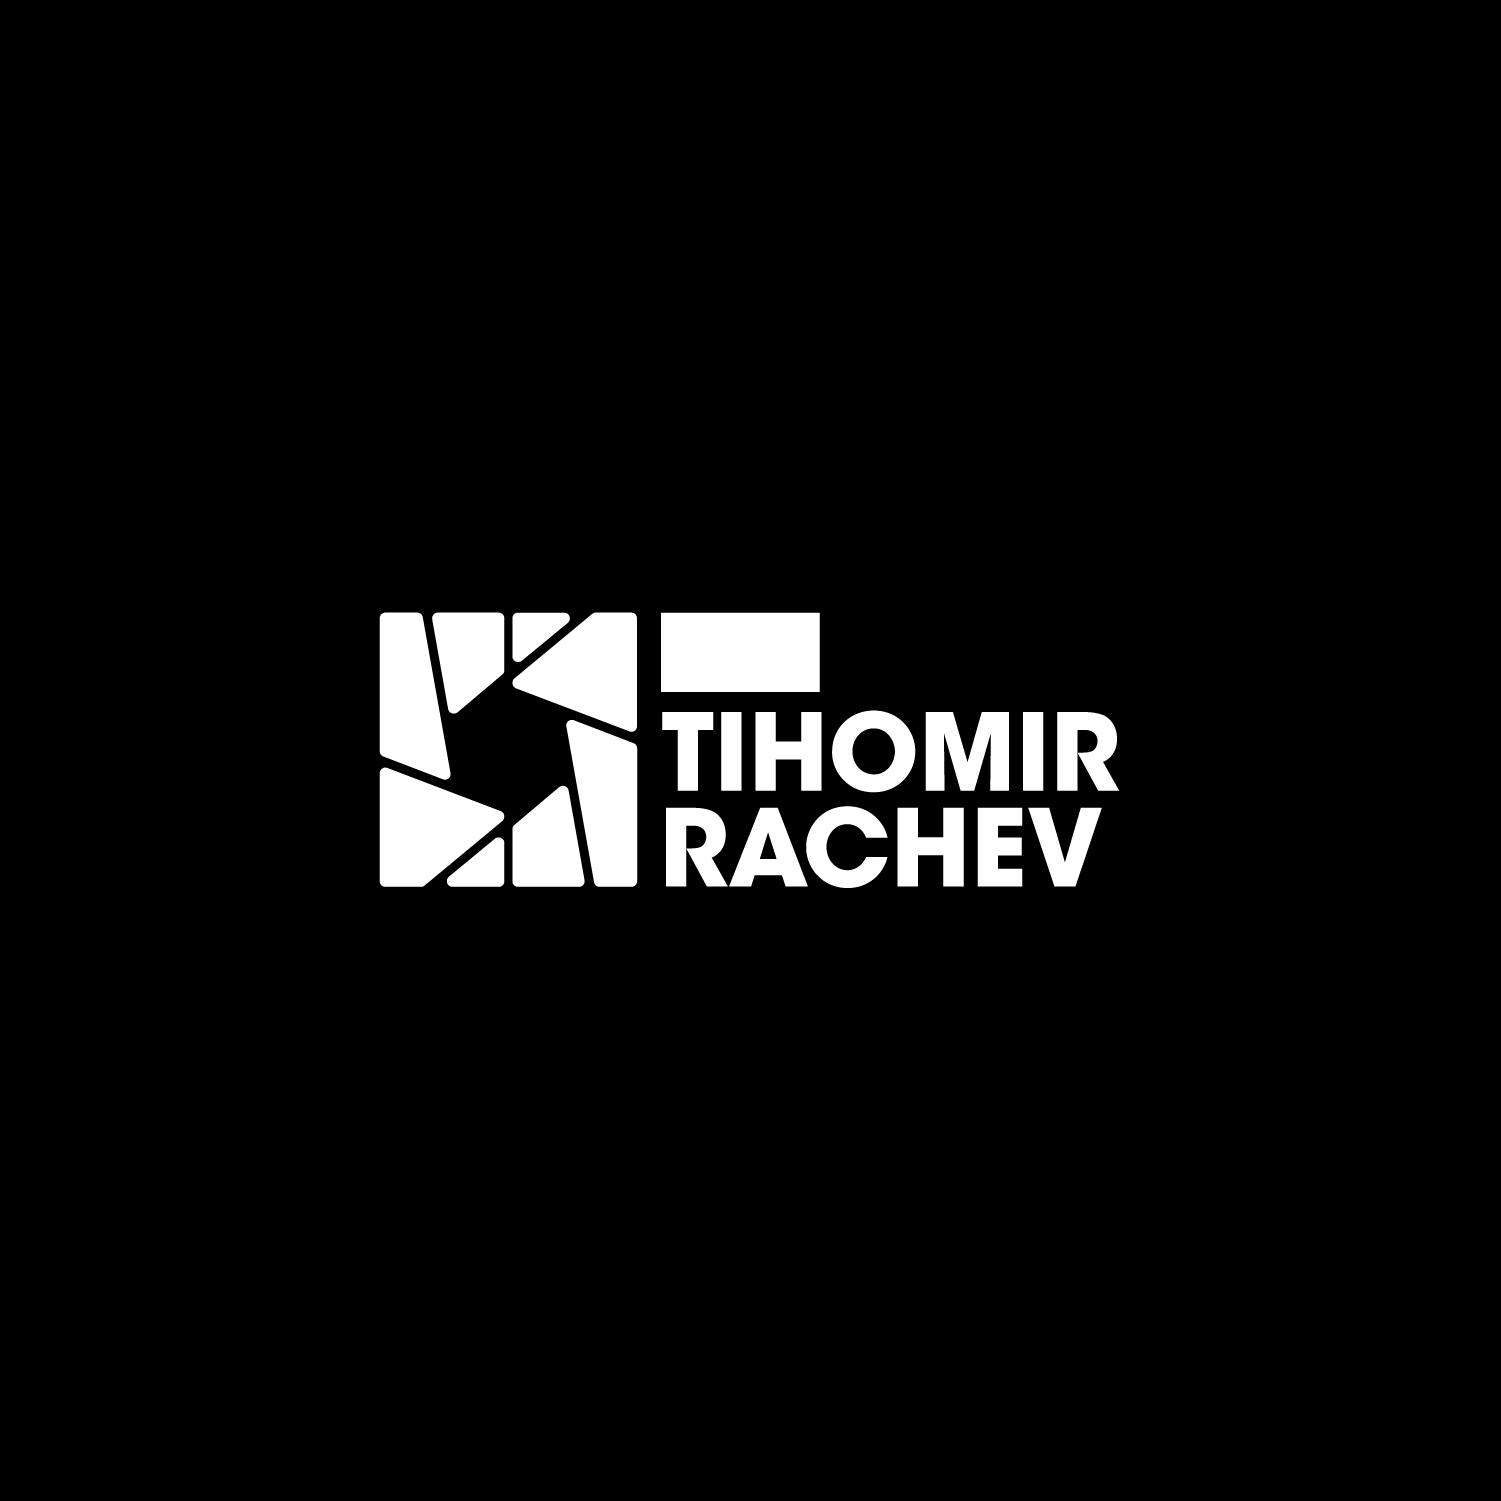 Tihomir Rachev